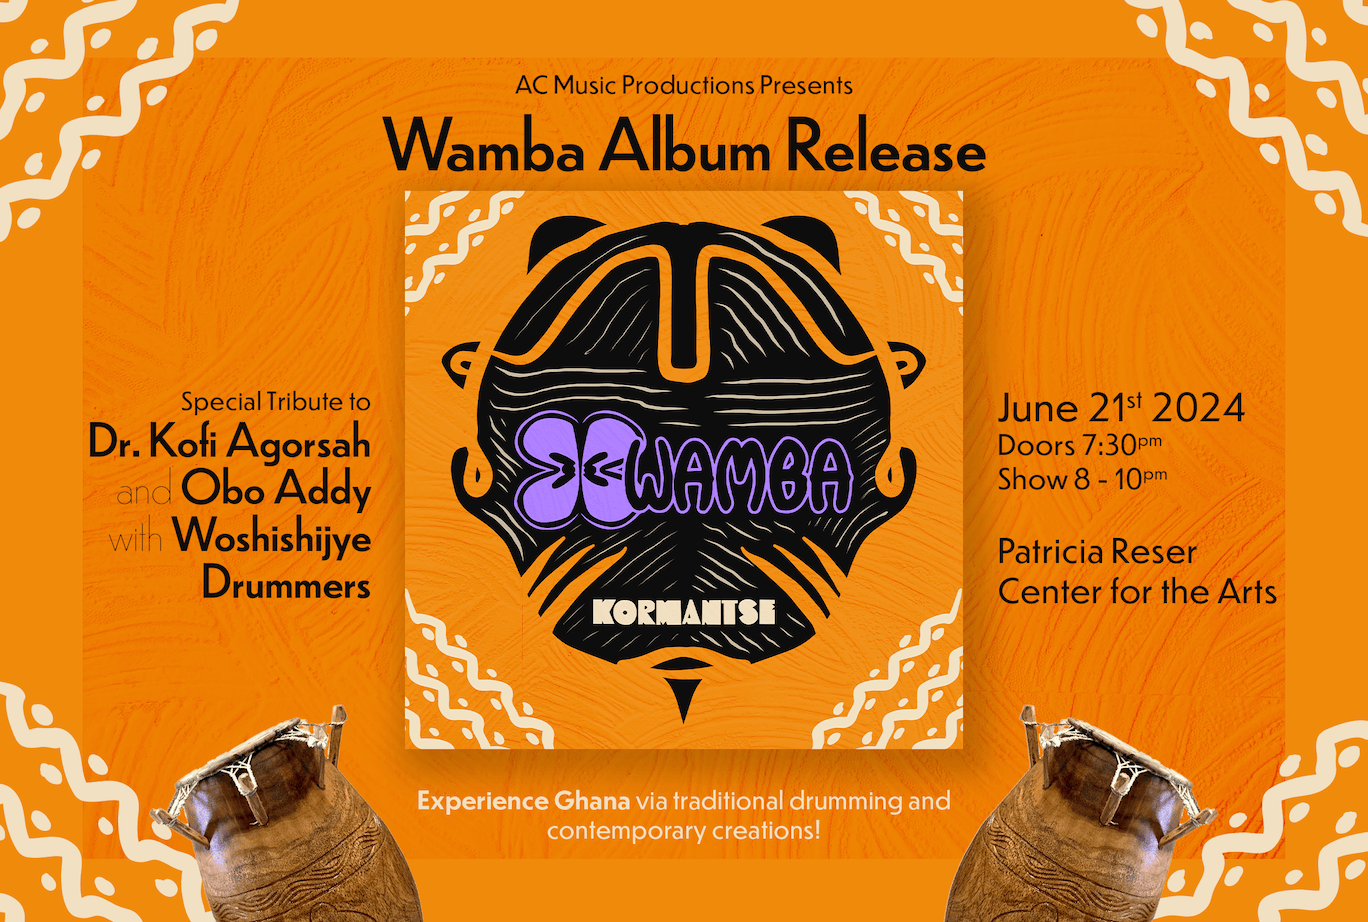 Wamba album release - Kormantse